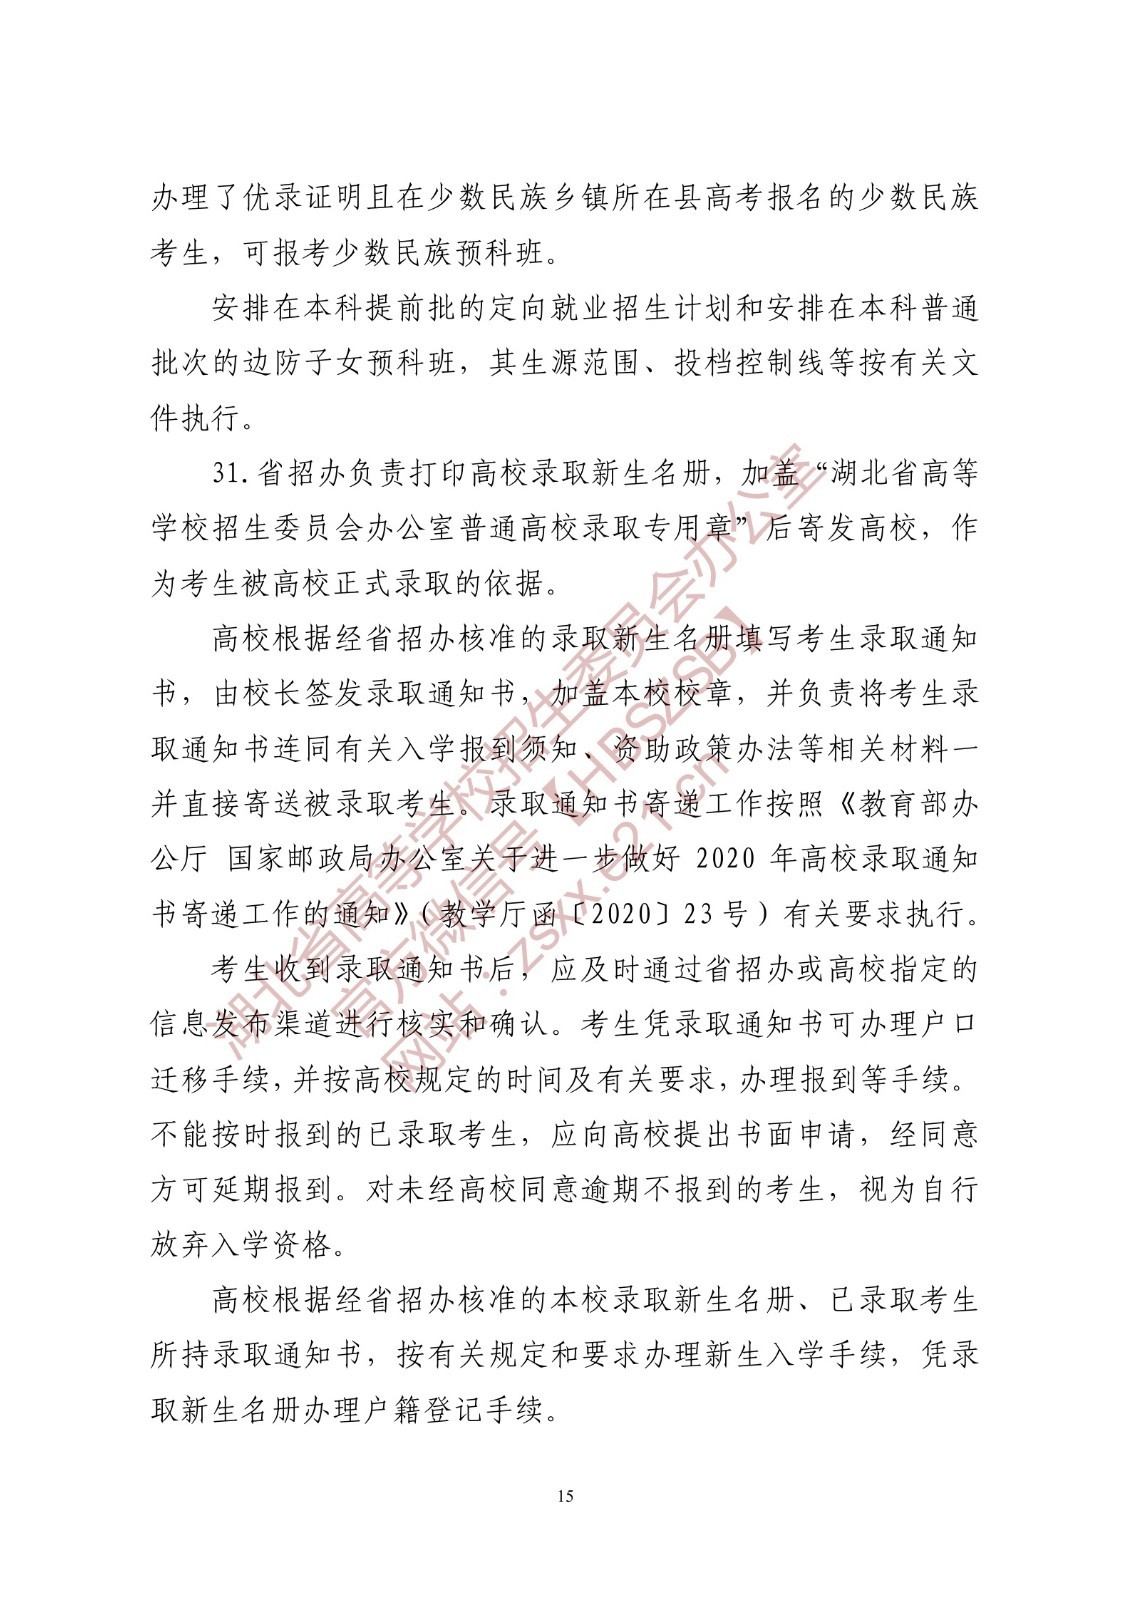 2022年湖北省普通高校招生有关工作要求（实行3+1+2模式、报考条件、办法及考试时间、高考命题）